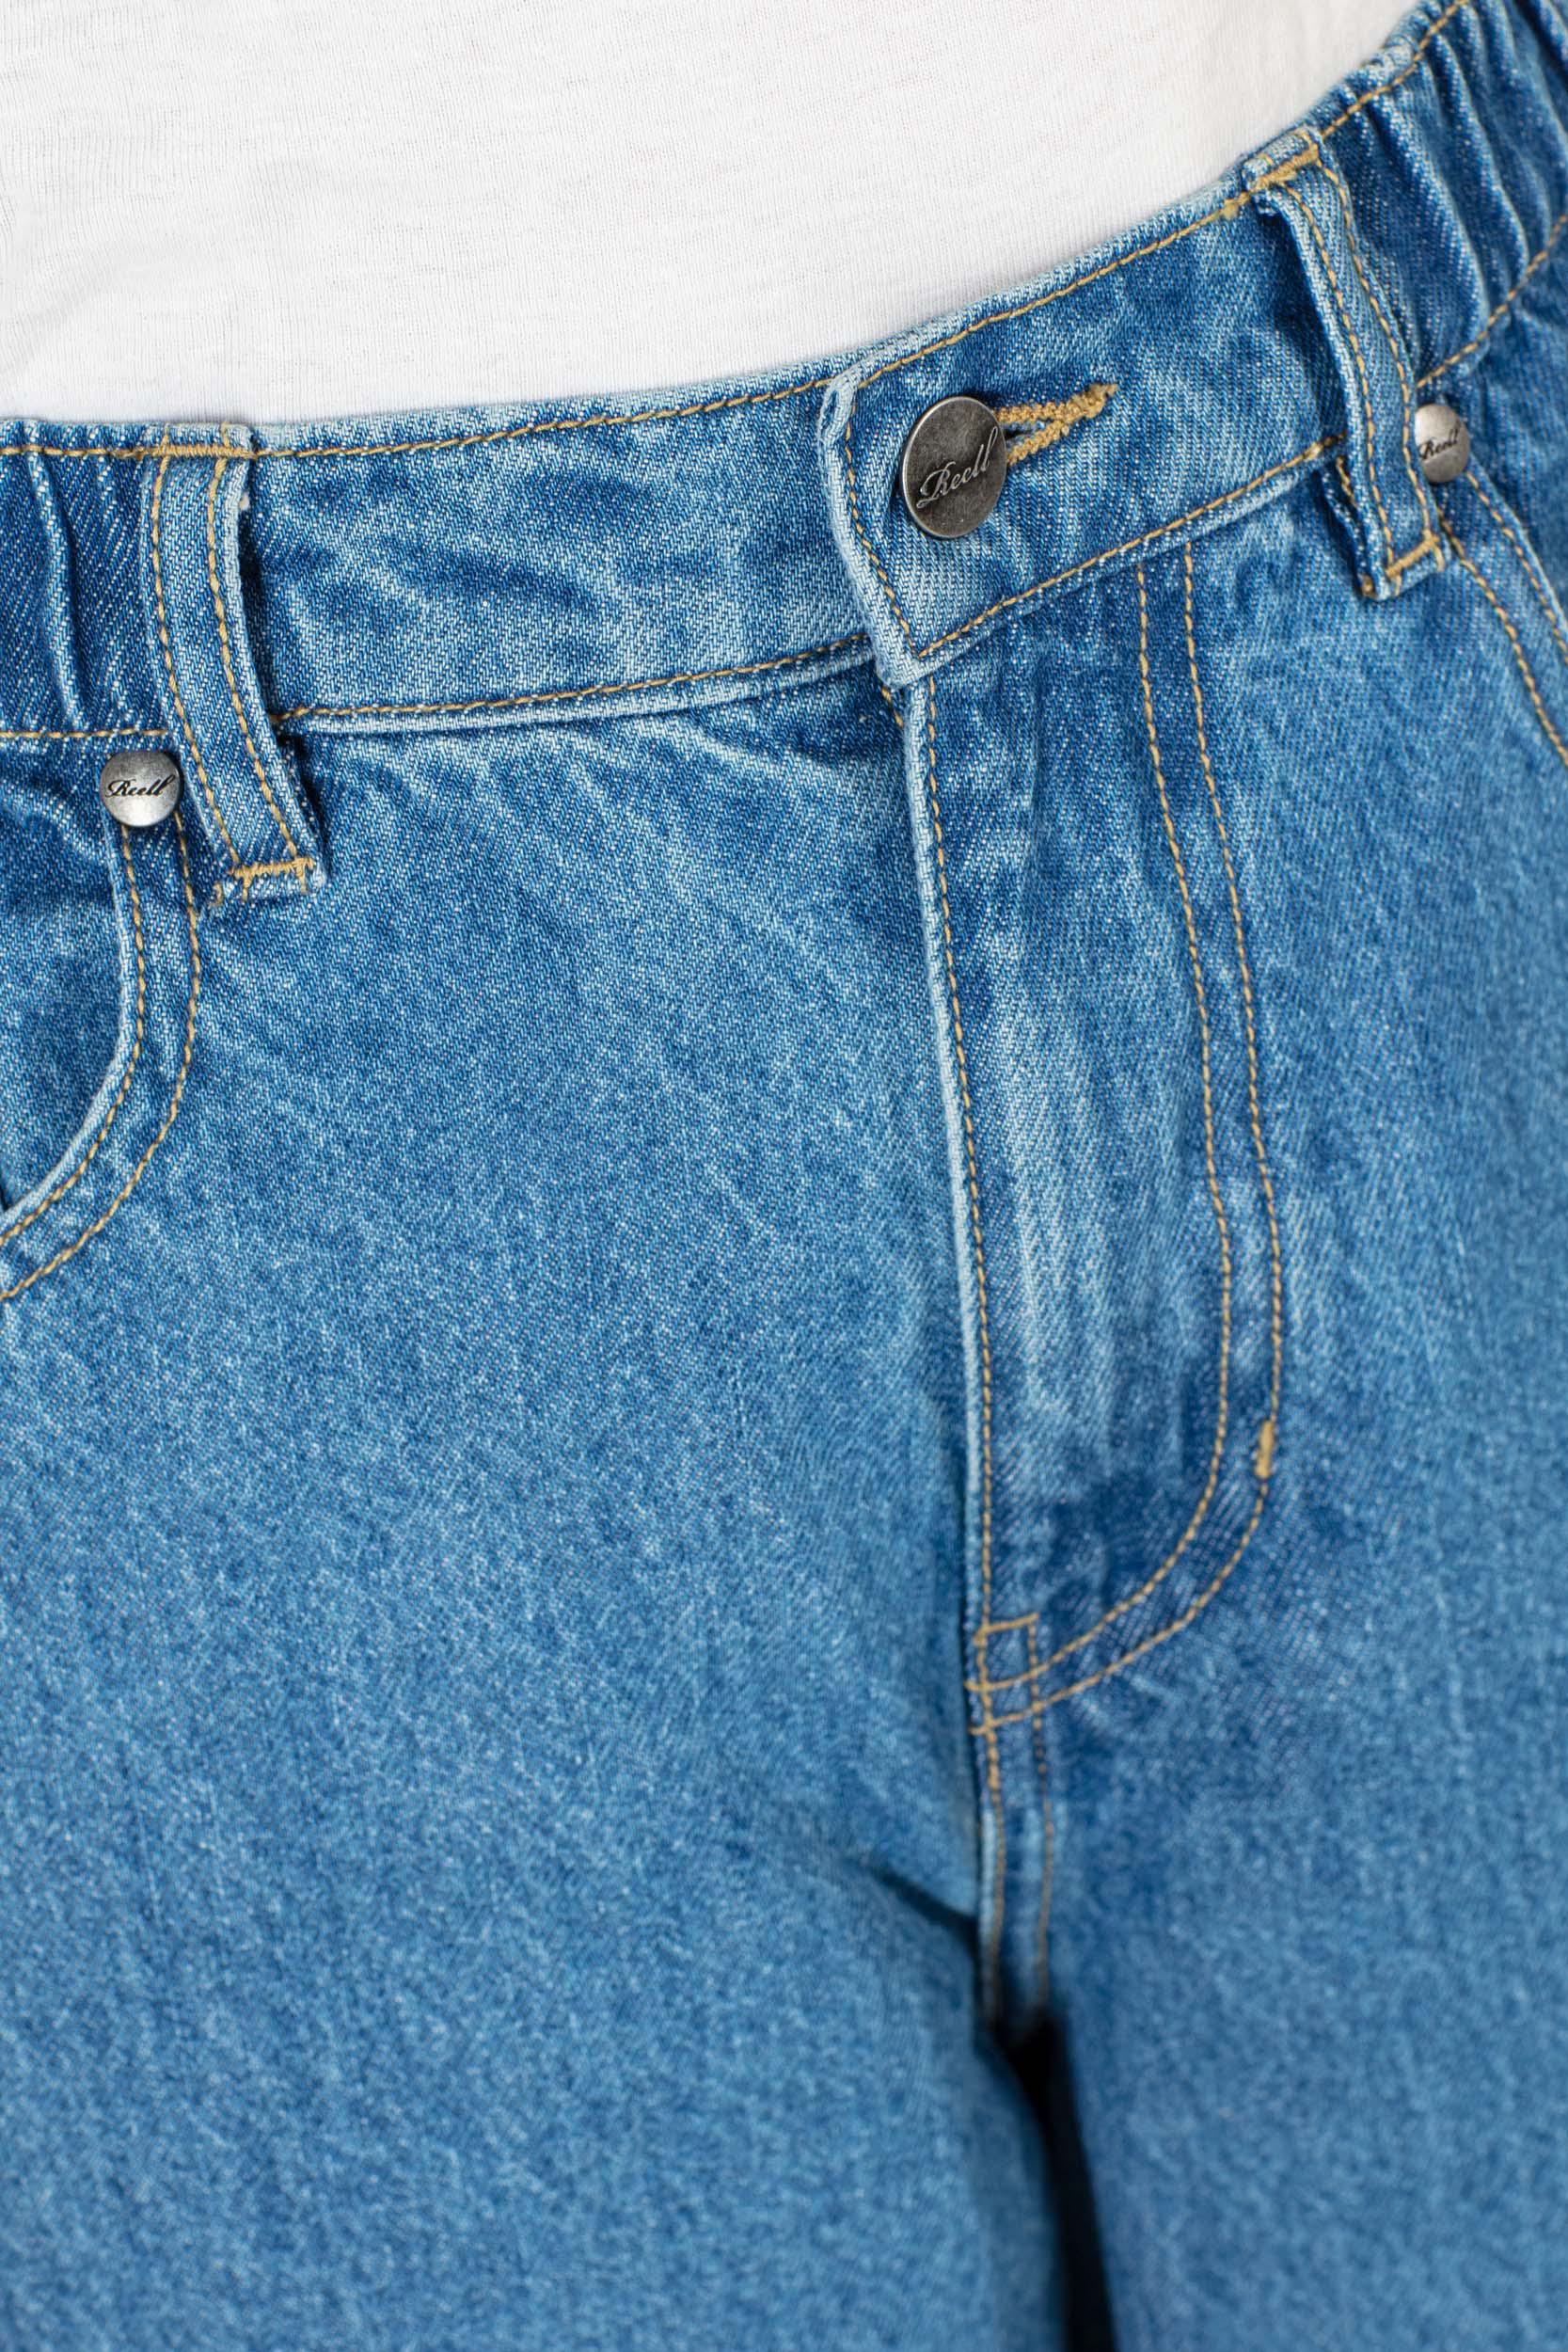 Reell Women Sky Jeans (Farbe: Origin Mid Blue / Größe: 30)